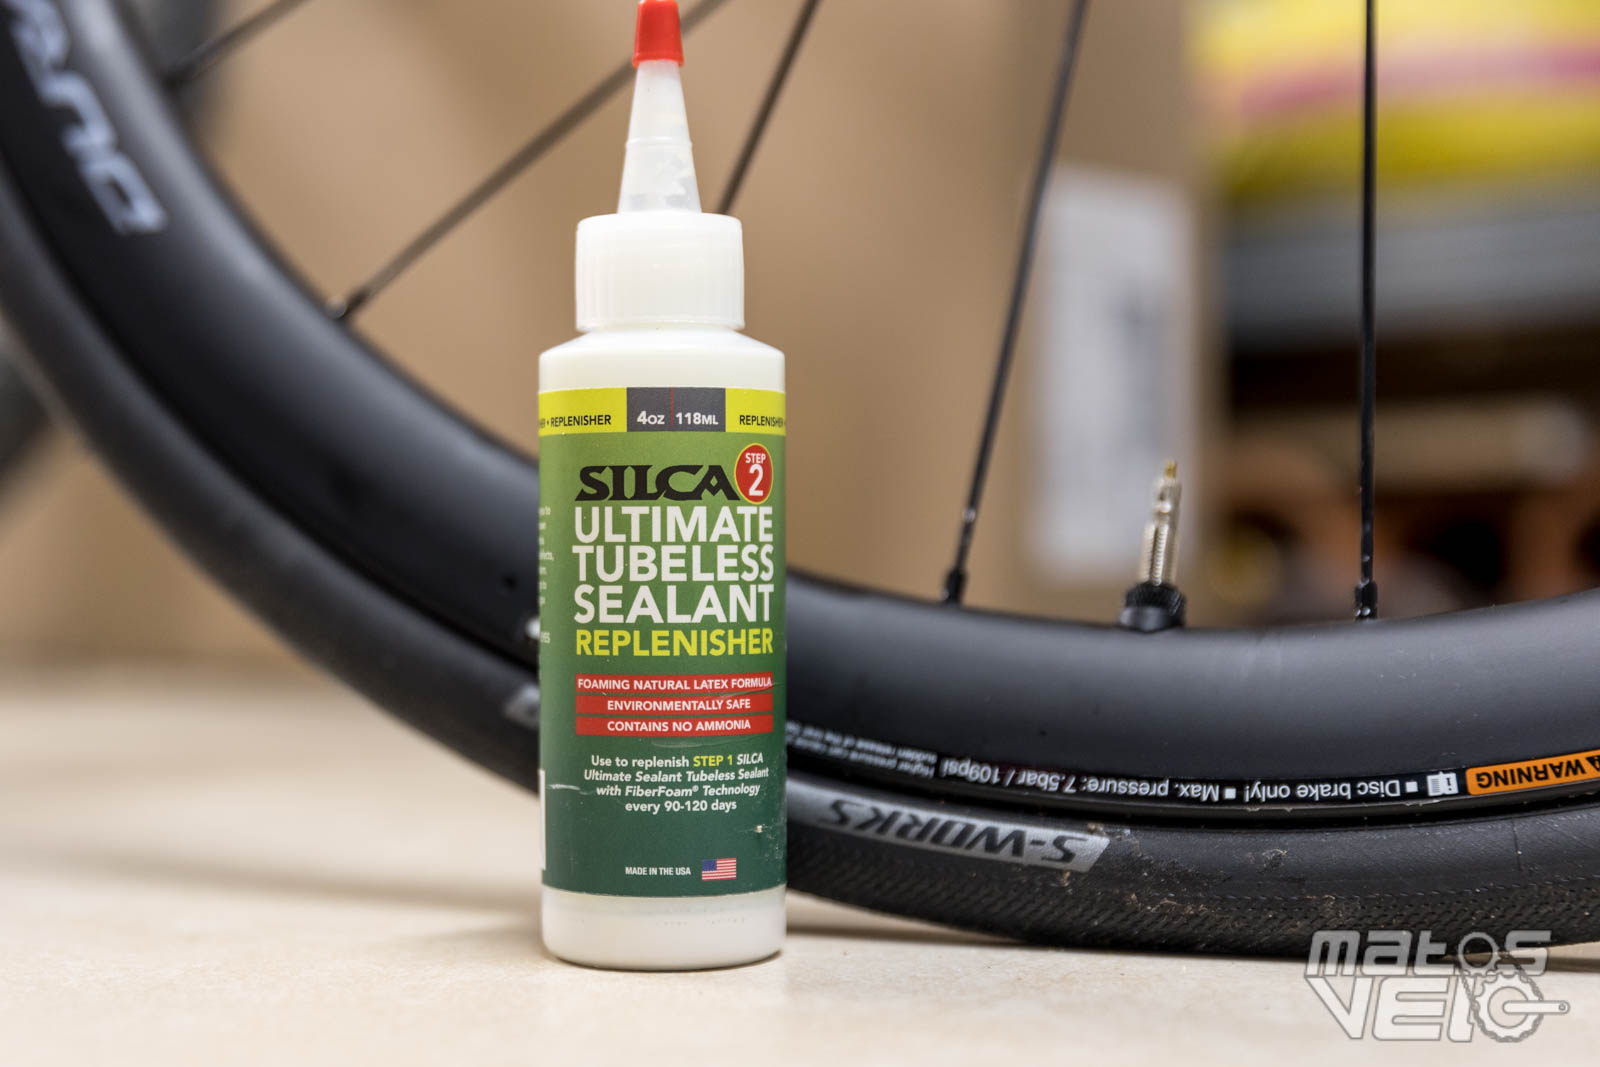 Essai du liquide préventif tubeless Silca Ultimate - Matos vélo